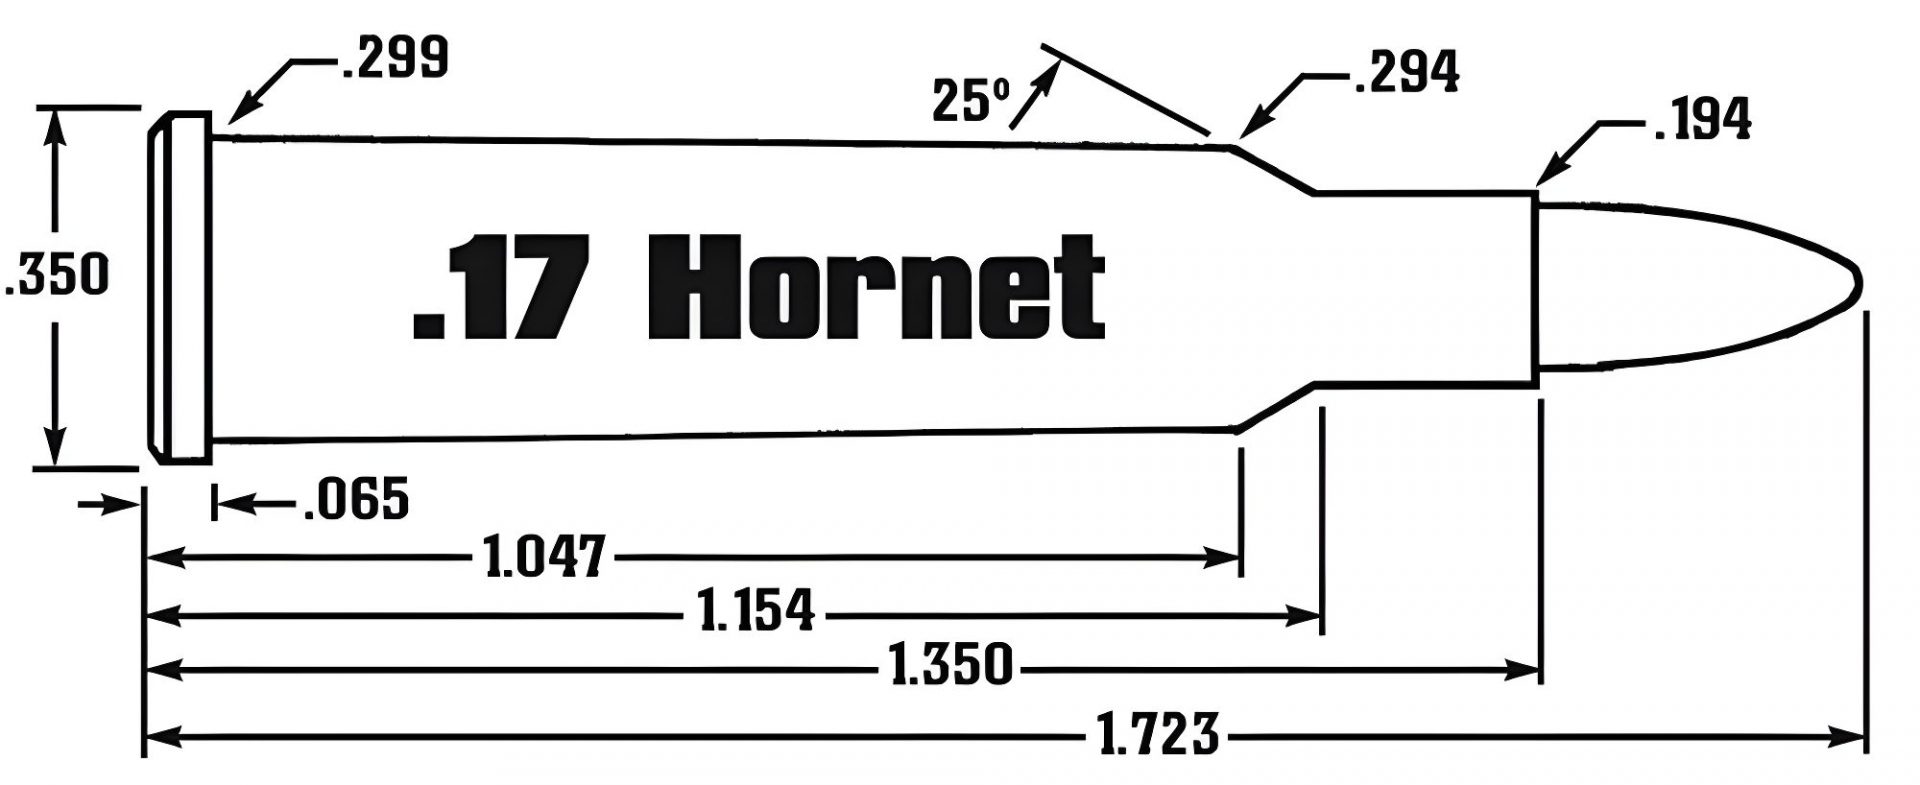 17 Hornet Ammo